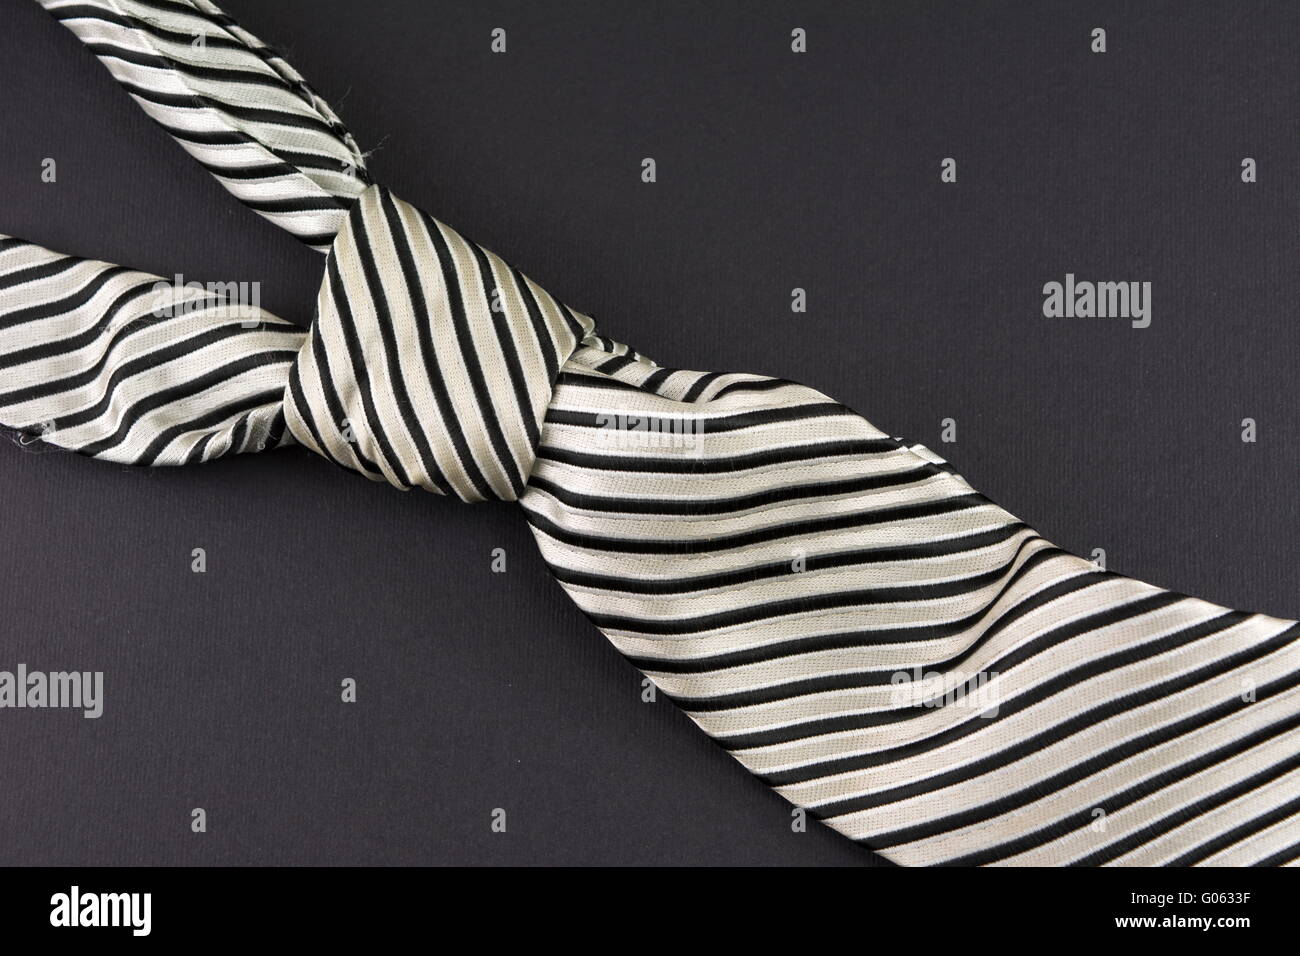 Cravate rayée sur fond noir. Résumé de la mode Banque D'Images